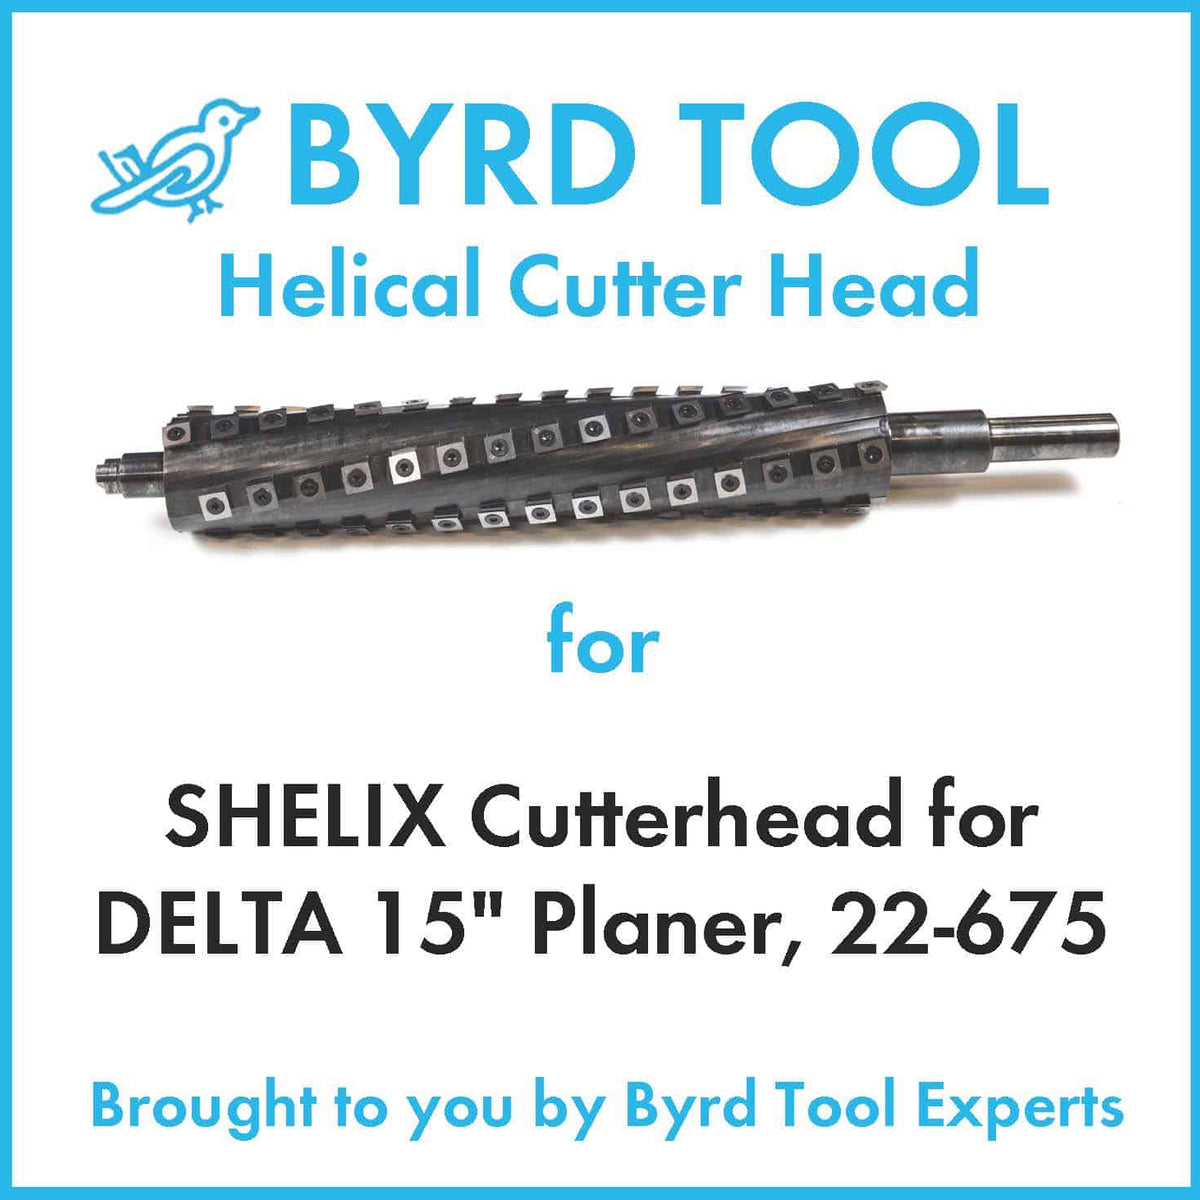 SHELIX Cutterhead for DELTA 15" Planer